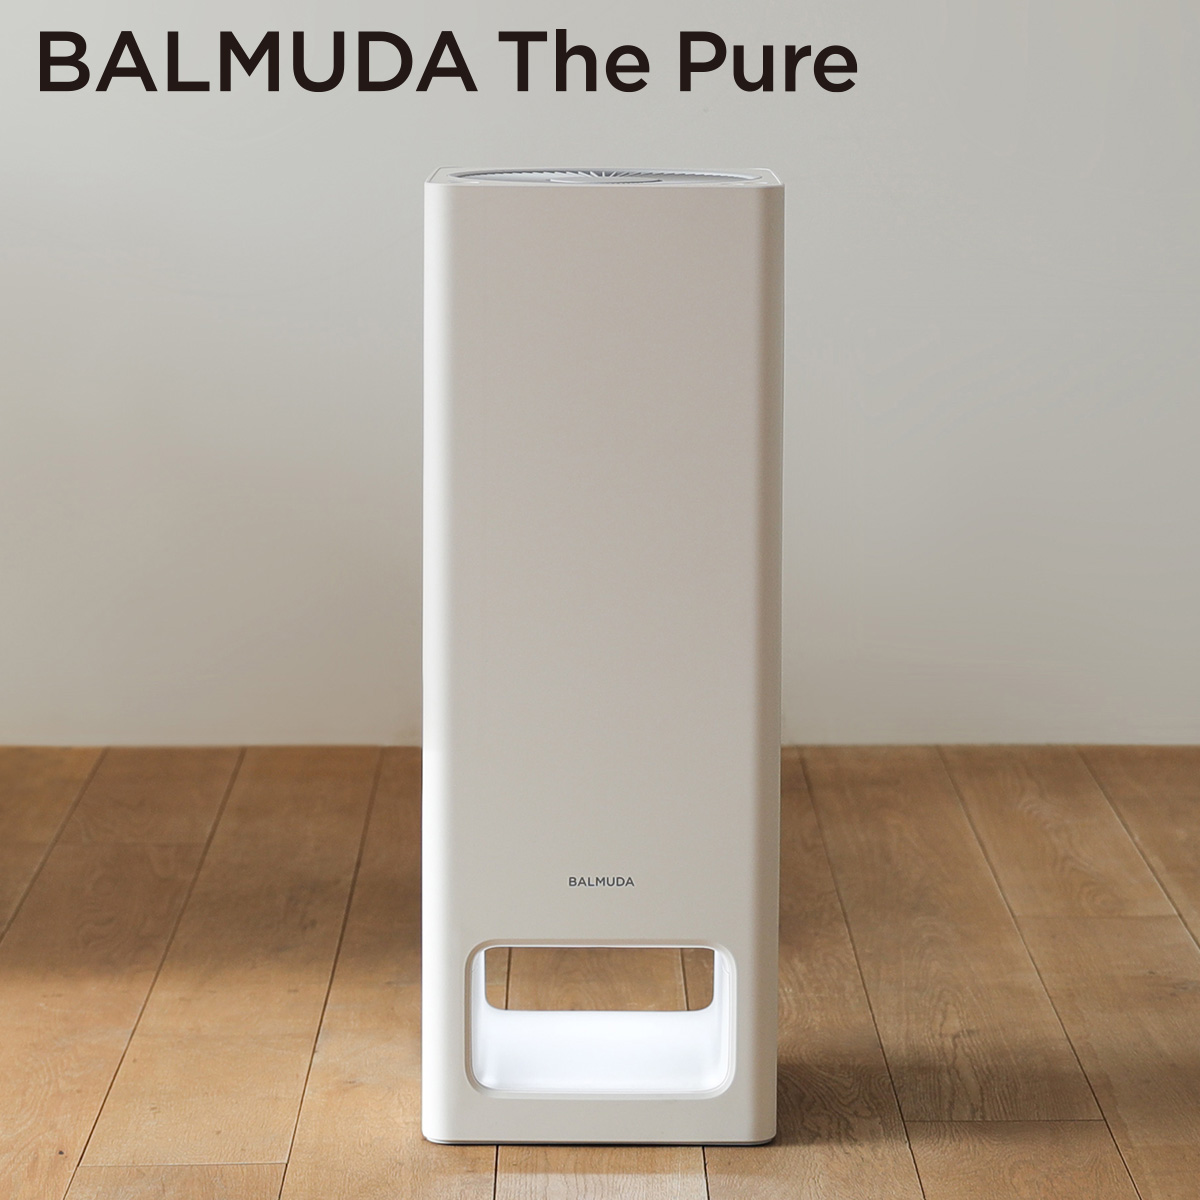 ひかりＴＶショッピング 「BALMUDA The Pure」 ザ・ピュア 空気清浄機 ホワイト A01A-WH｜バルミューダ